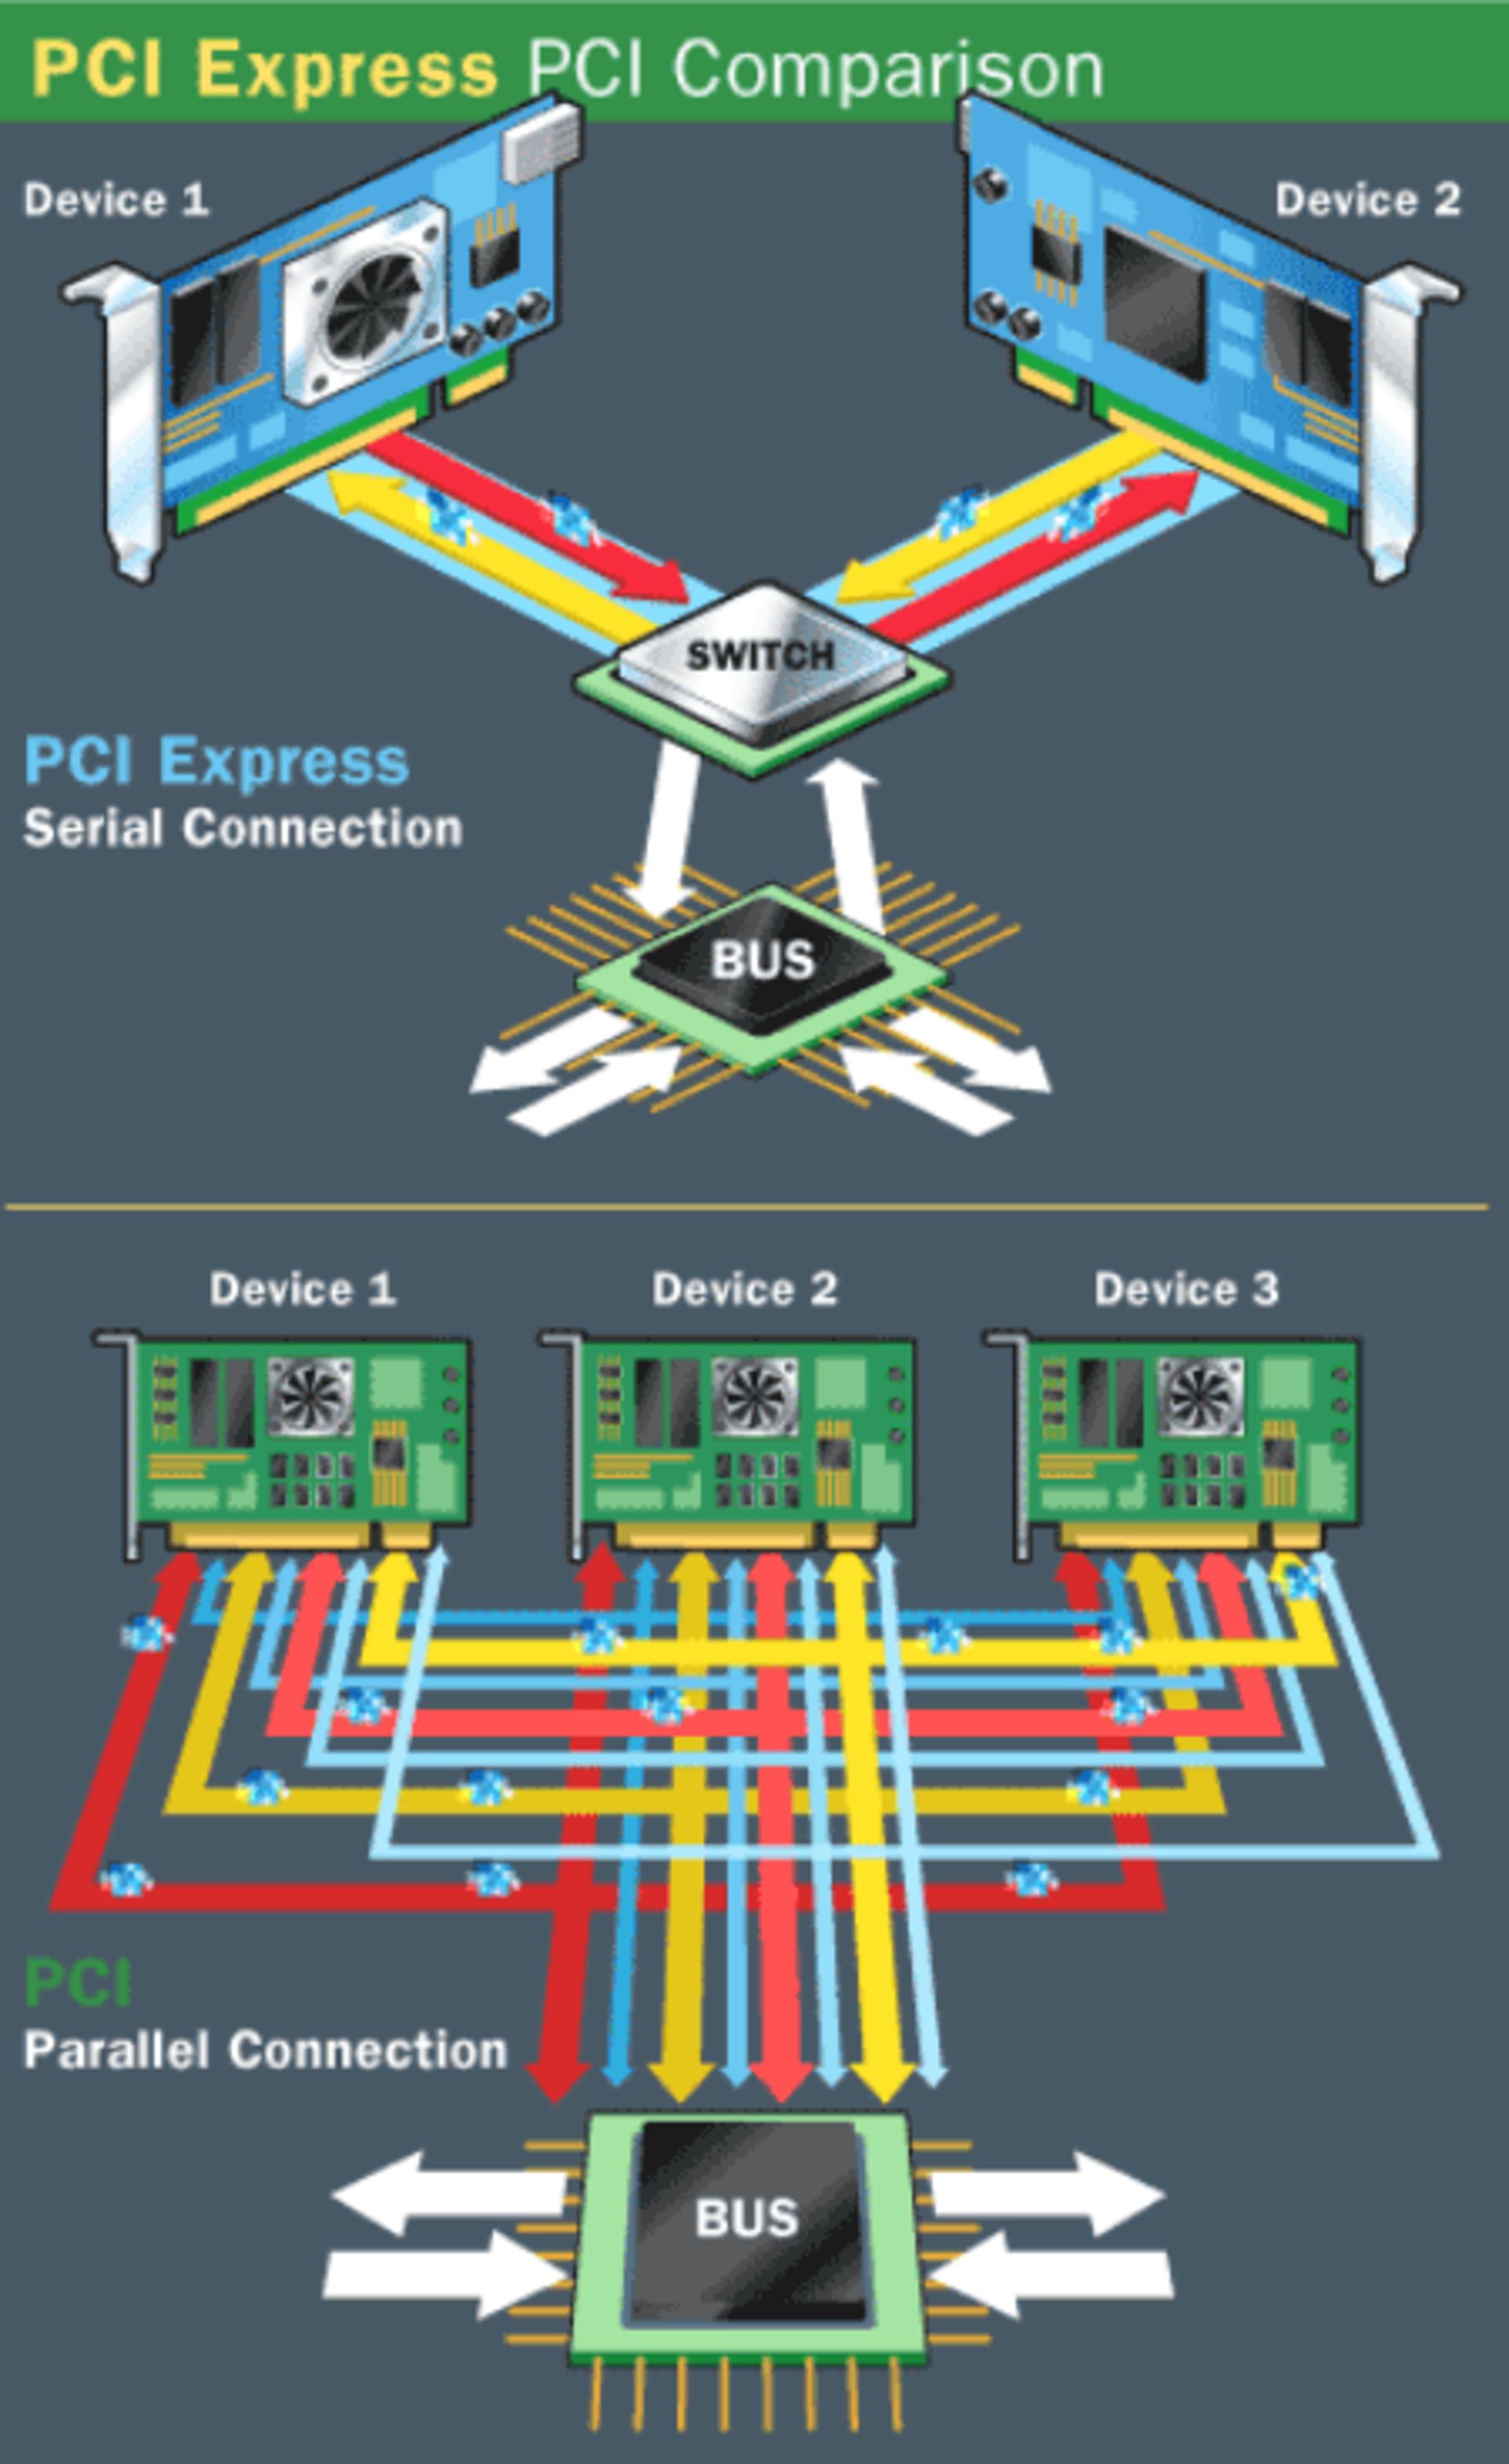 pci-express-comparison-6